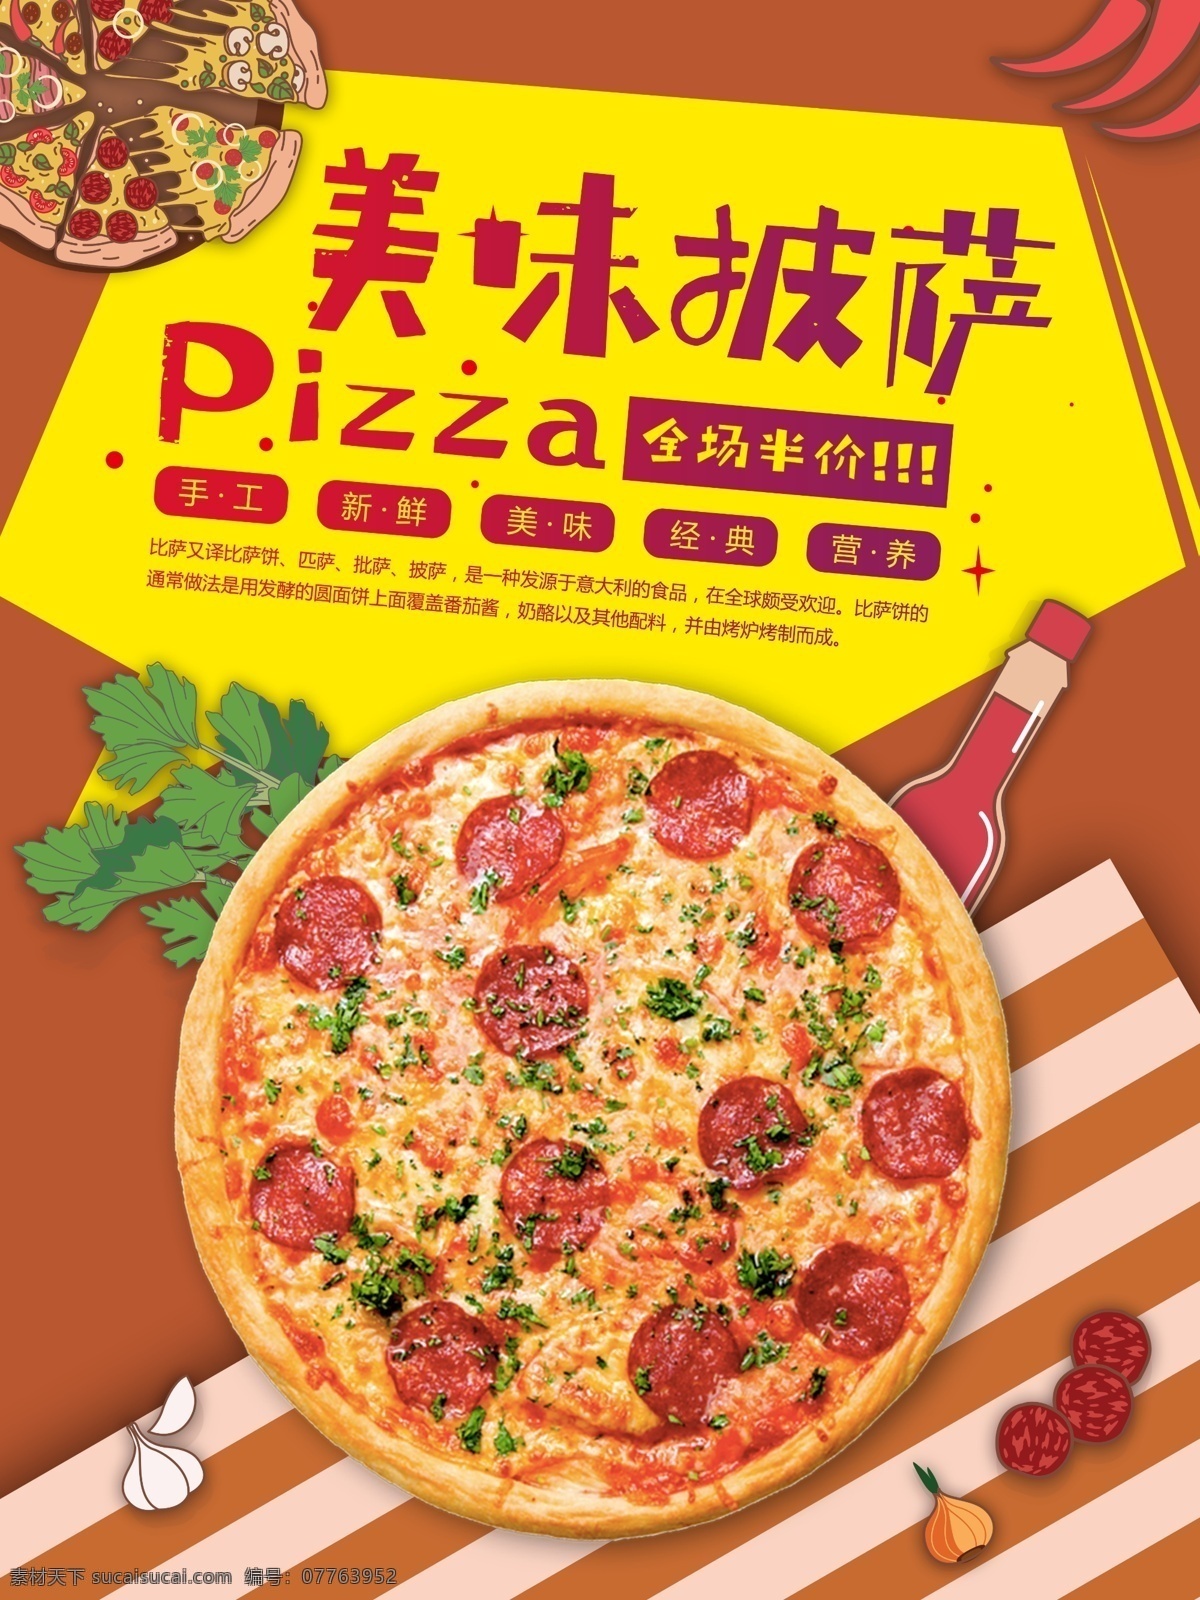 培根 pizza 半价 促销 美味 披萨 小 清新 西餐 餐饮店 宣传 海报 小清新海报 美食海报 西餐海报 披萨海报 快餐海报 美食上新 全场半价 手工披萨